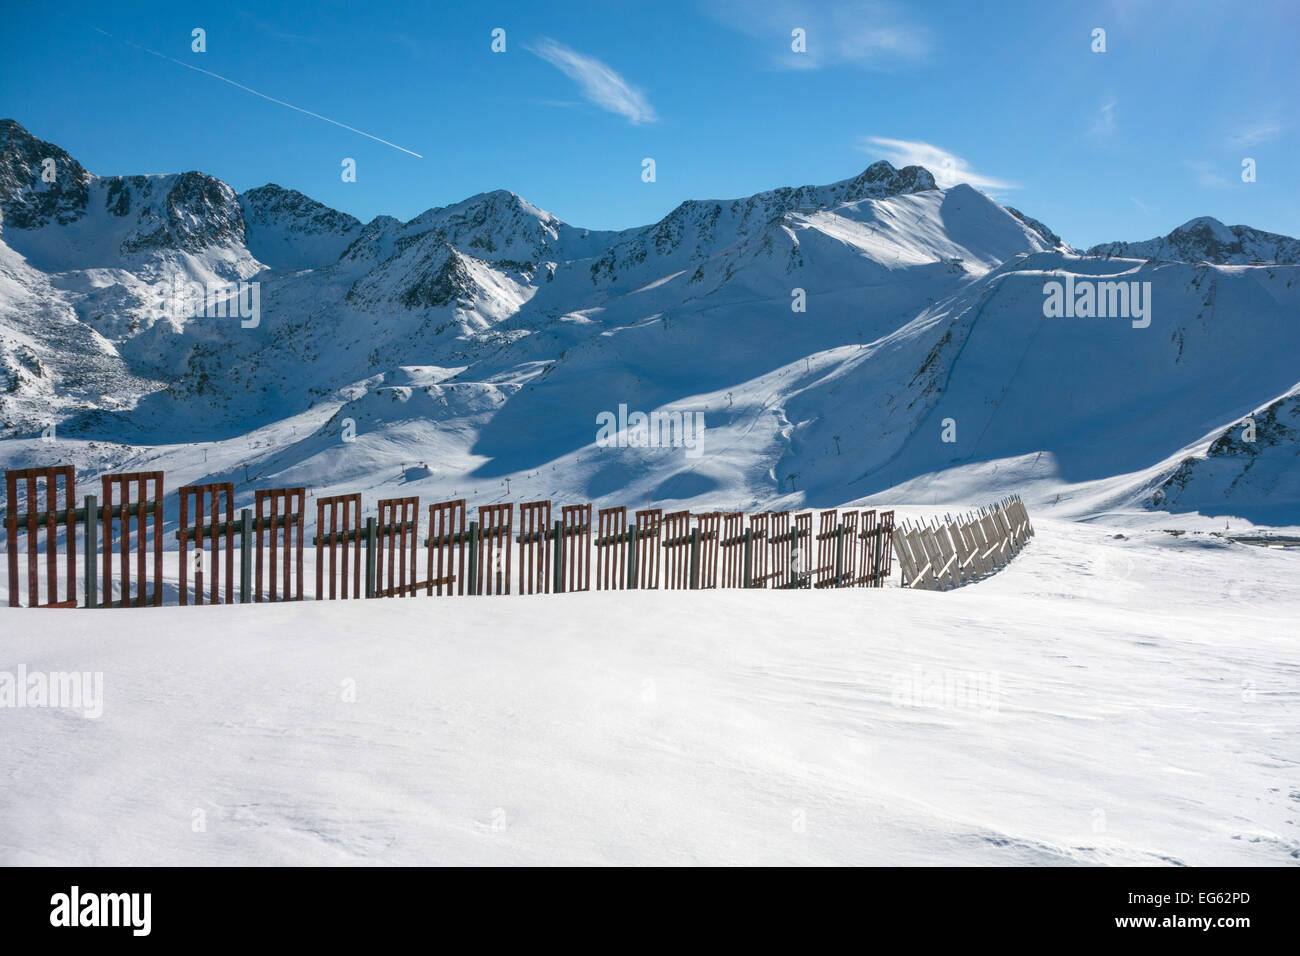 Clôture à neige et montagnes de neige, ciel bleu, station de ski, pas de la Casa, Andorre Banque D'Images